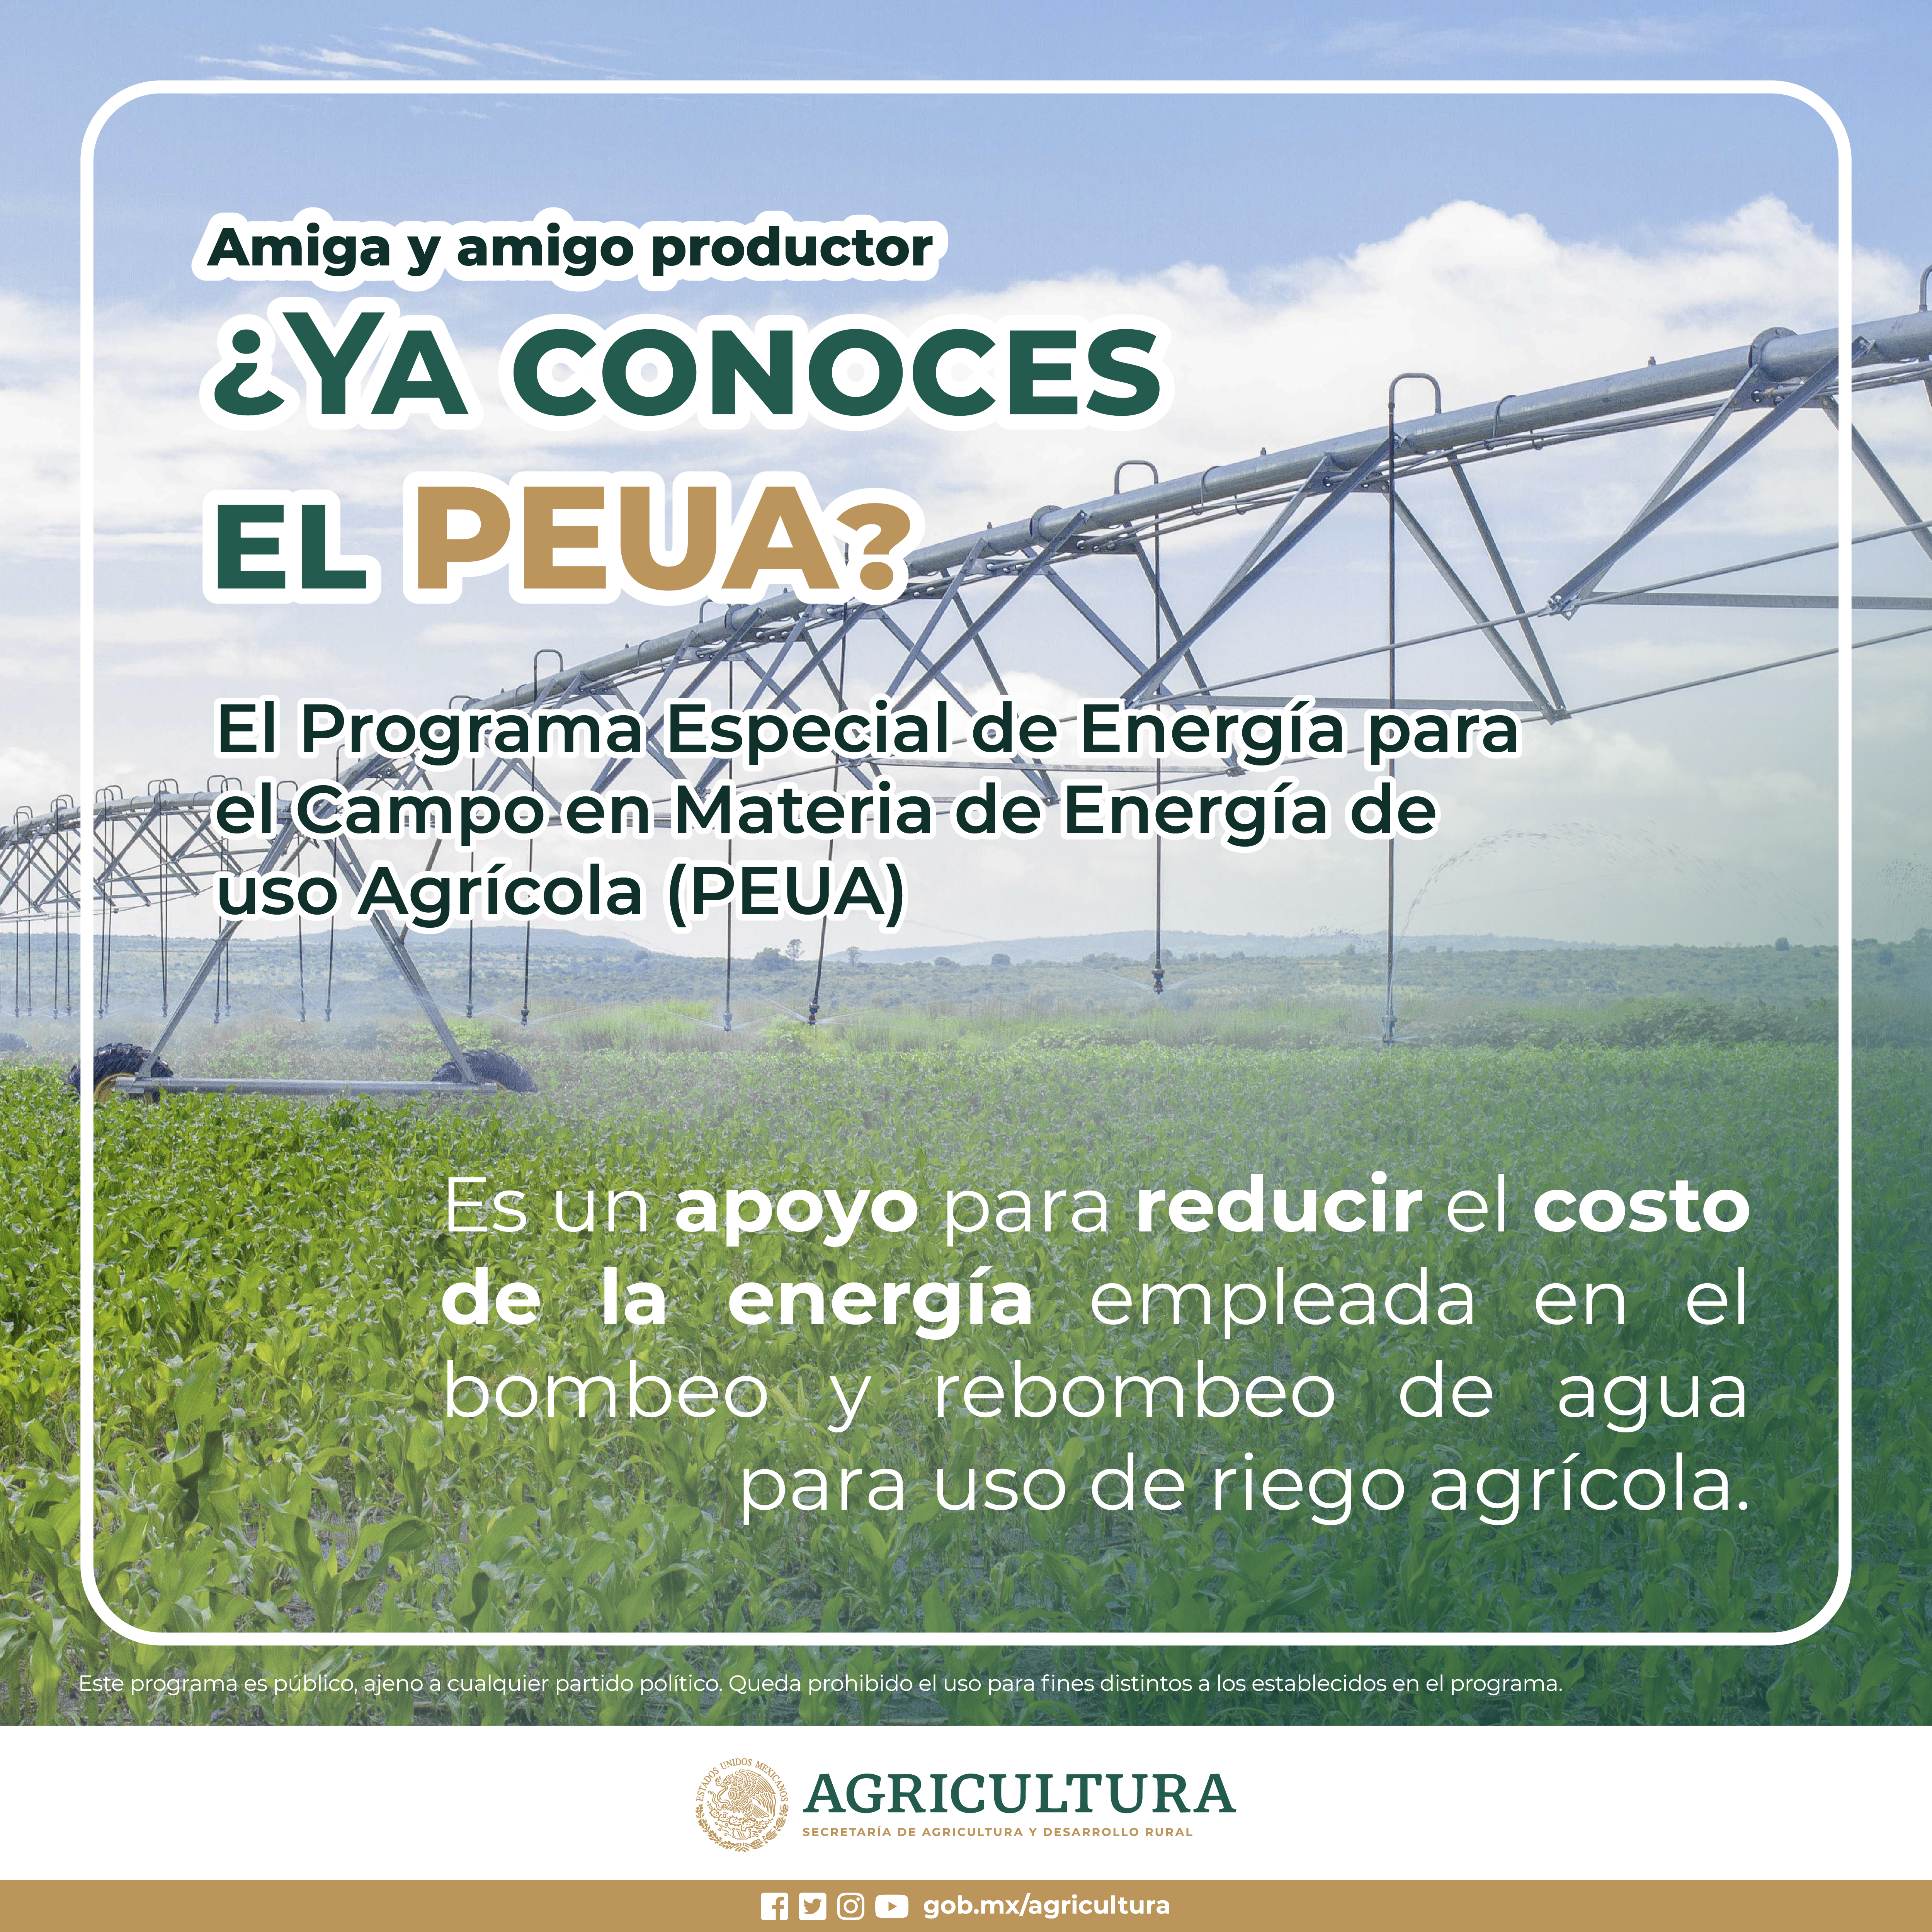 Programa Especial de Energía para el Campo en materia de energía eléctrica de uso agrícola (PEUA)